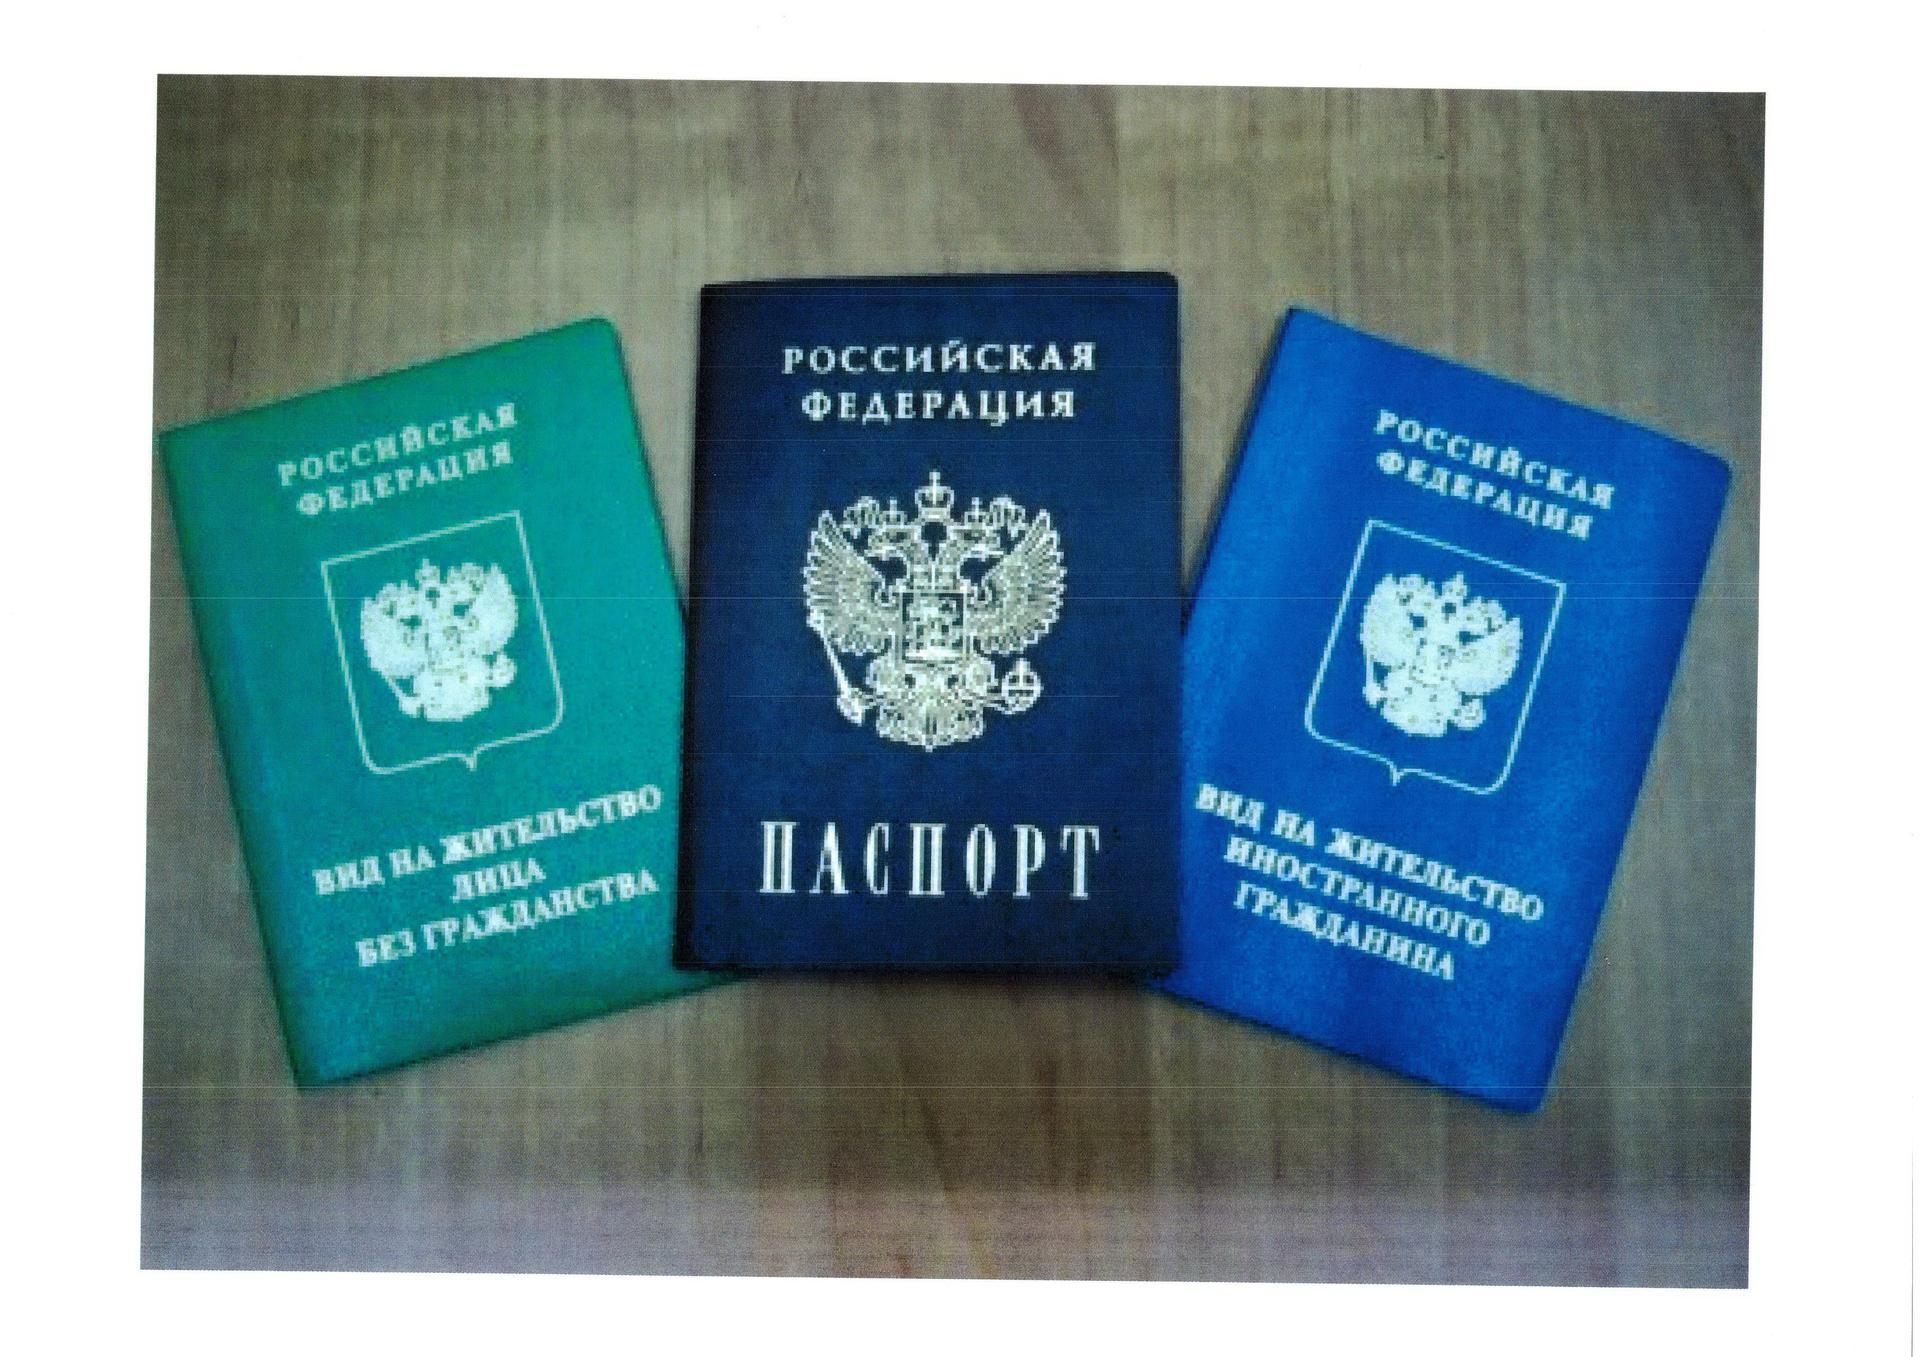 Как выглядит вид. Вид на жительство в России. Паспорт вид на жительство в России. Паспорт РФ И вид на жительство. Паспорт вид на жительство иностранного гражданина в РФ.